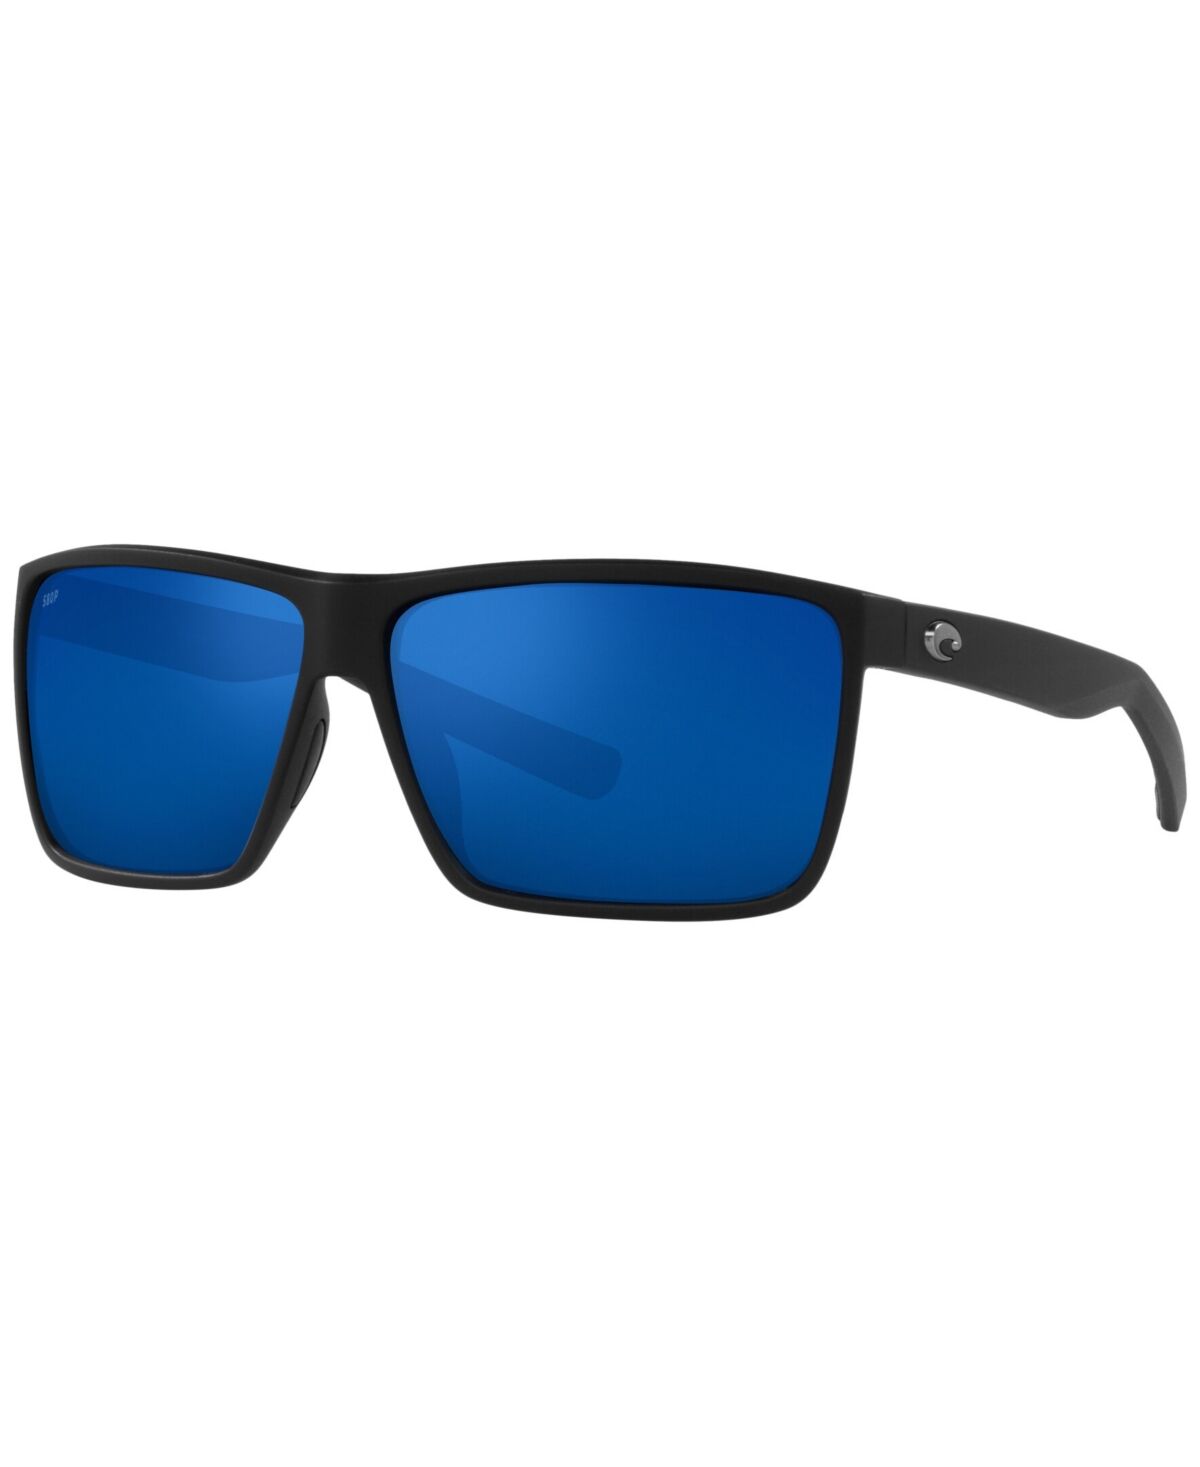 Costa Del Mar Men's Polarized Sunglasses, 6S9018 63 - Matte Black